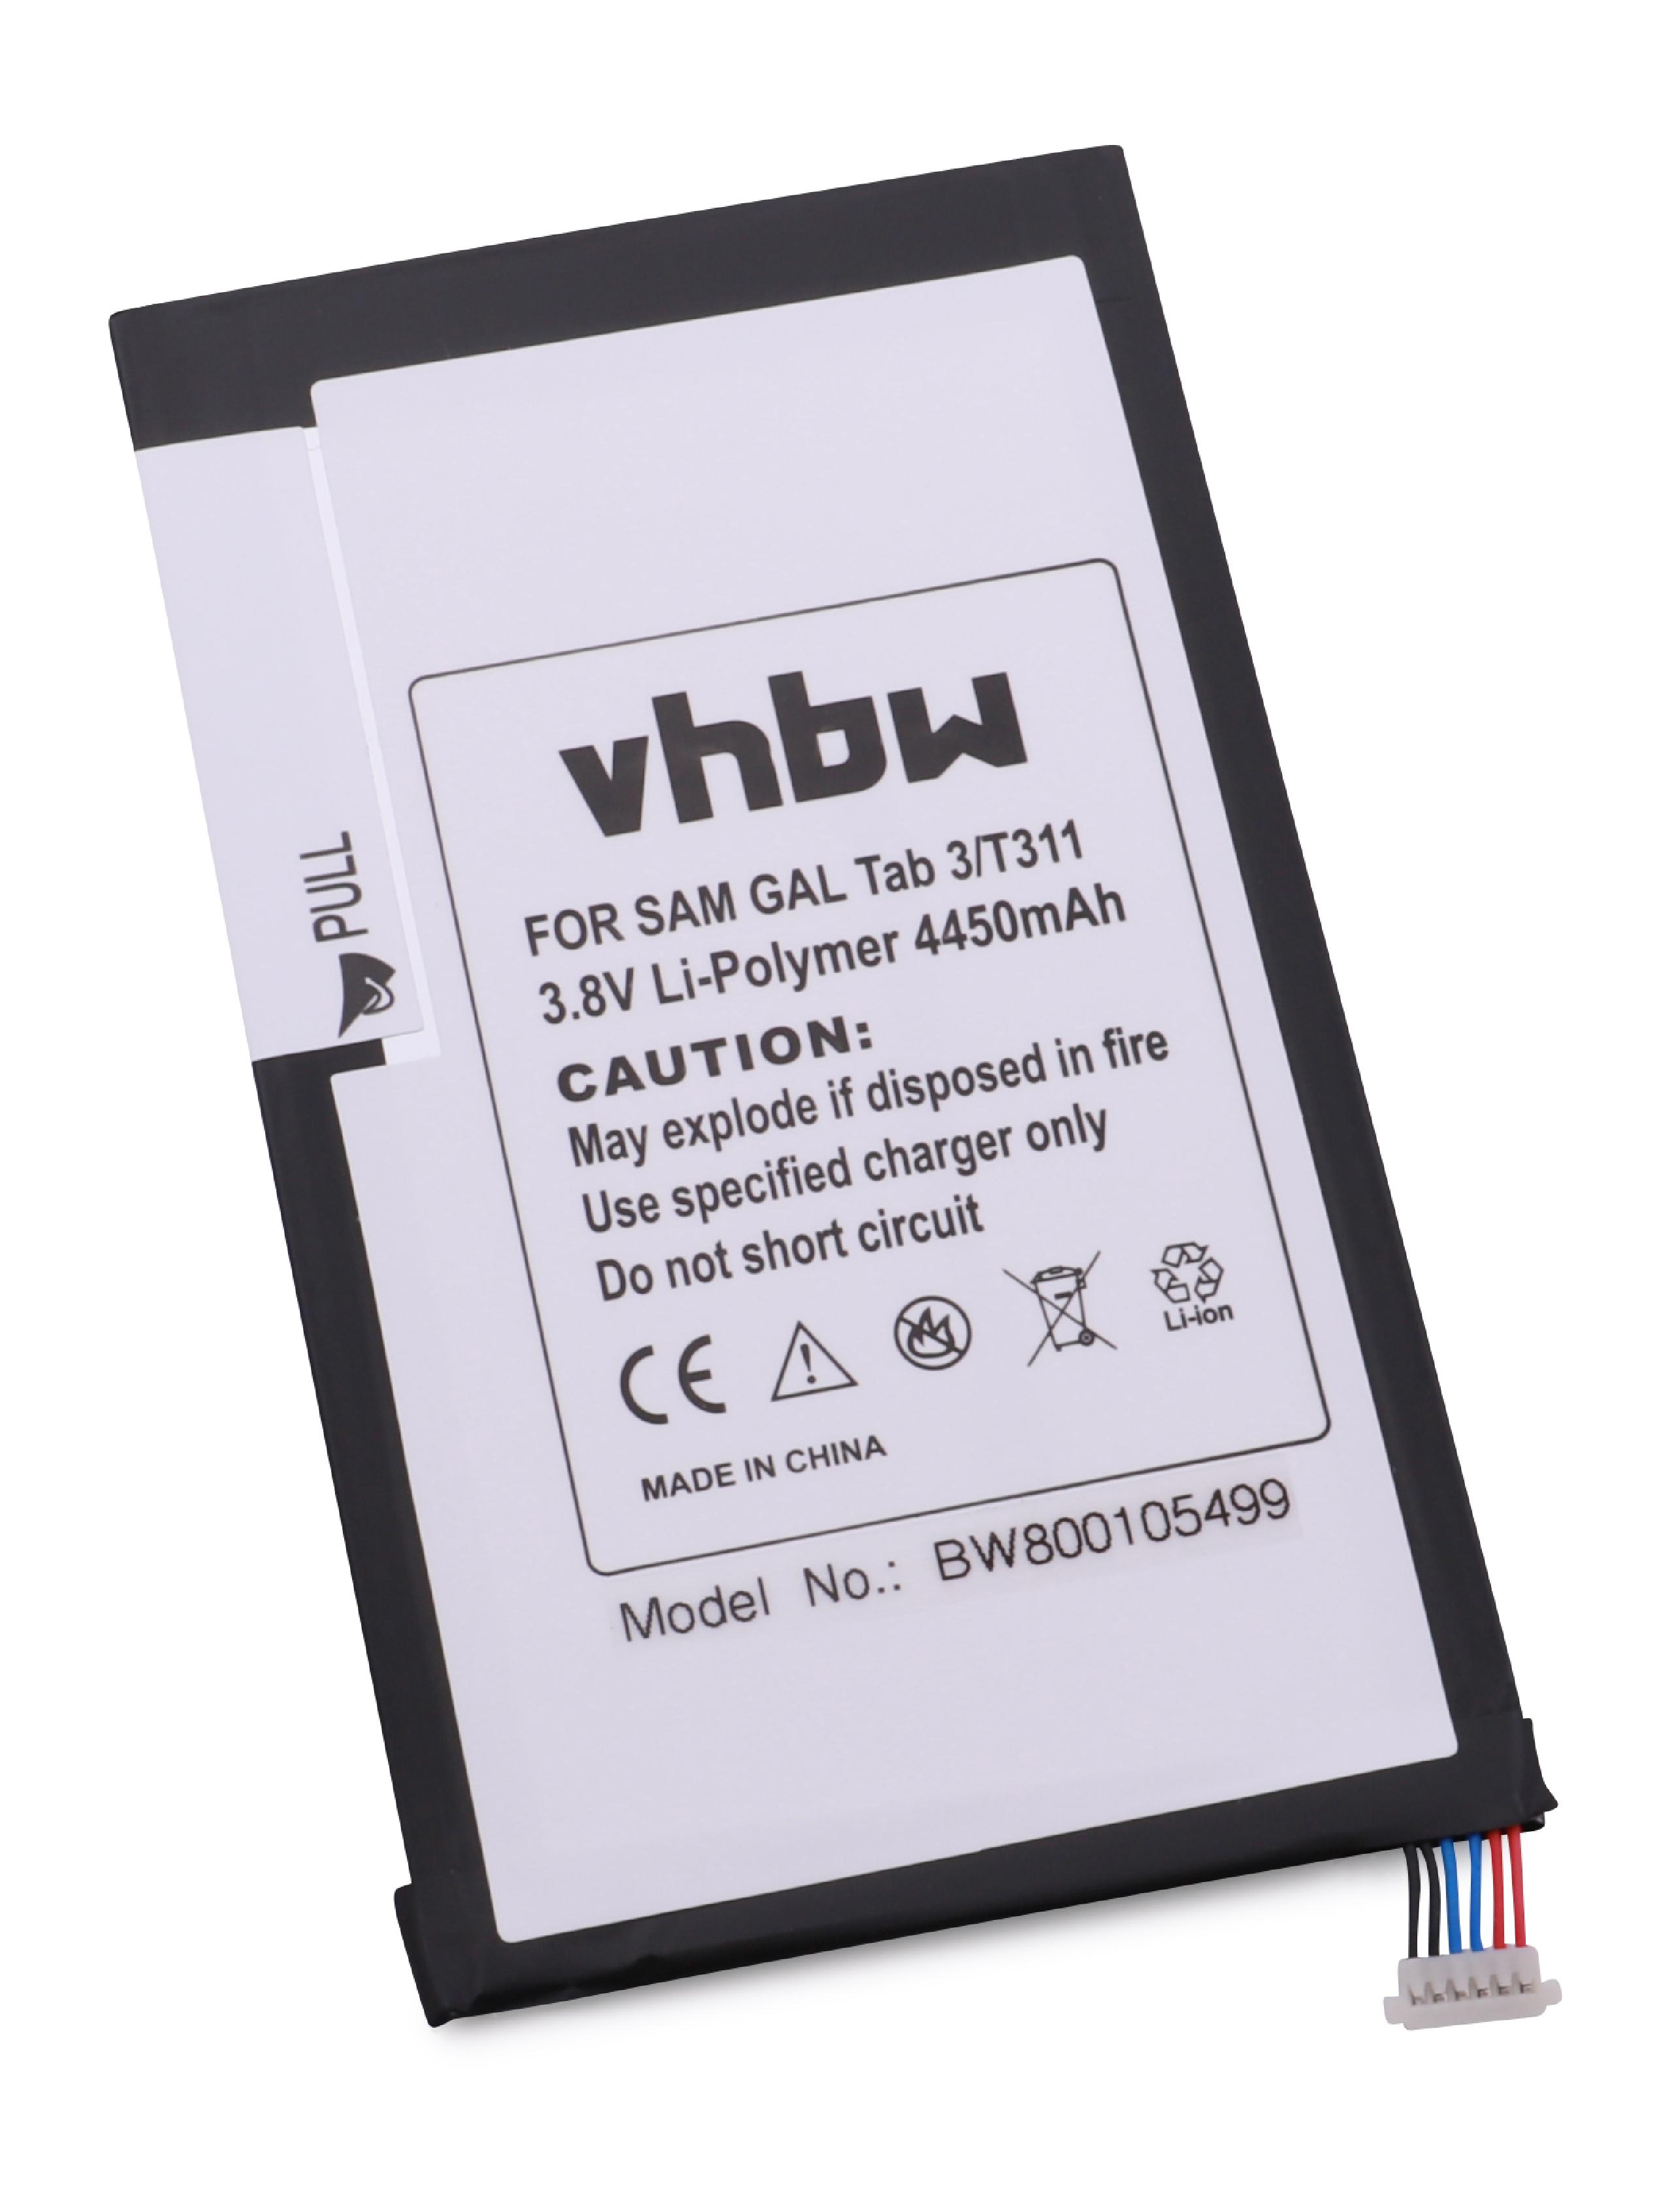 Volt, Galaxy VHBW Samsung Akku Li-Polymer Tab kompatibel - Tablet, mit 4450 3.8 SM-T315